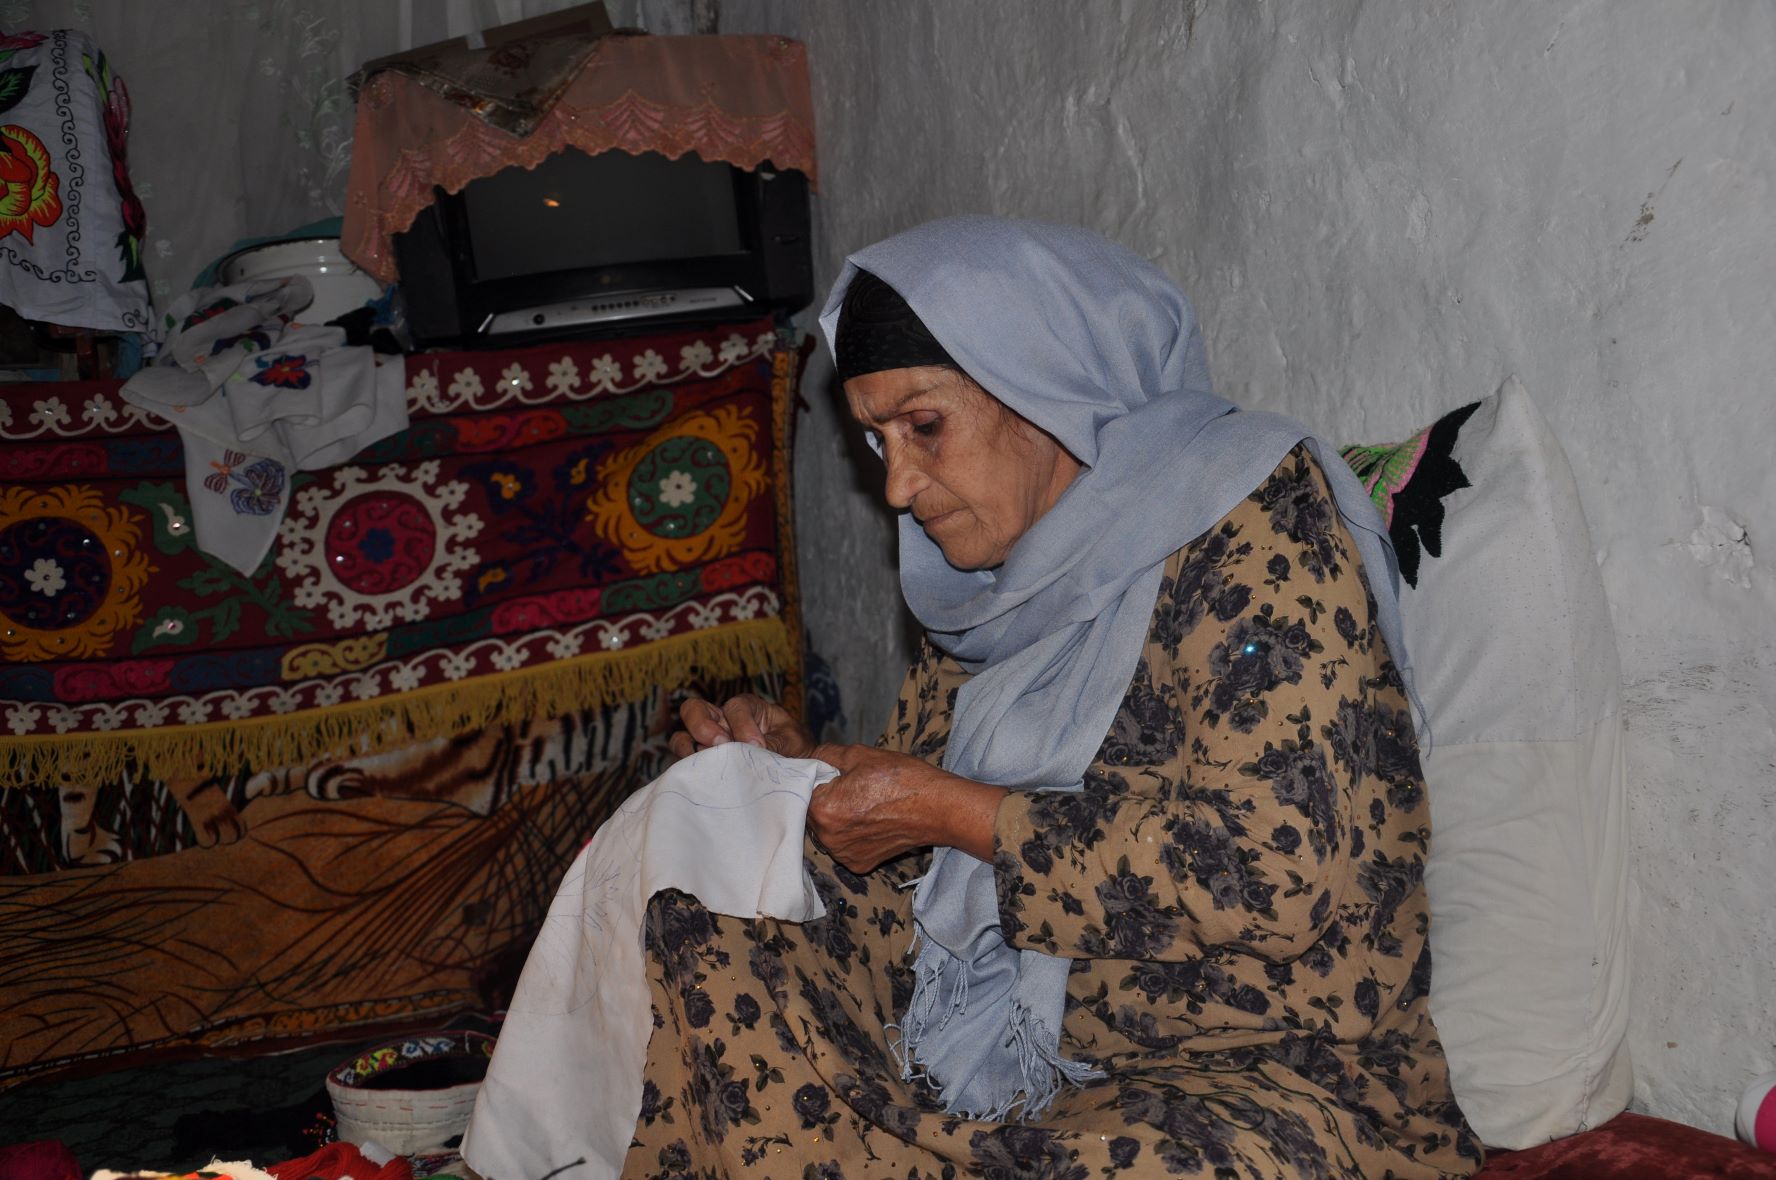 Видео снятое таджиками. Фото Афганская мать.